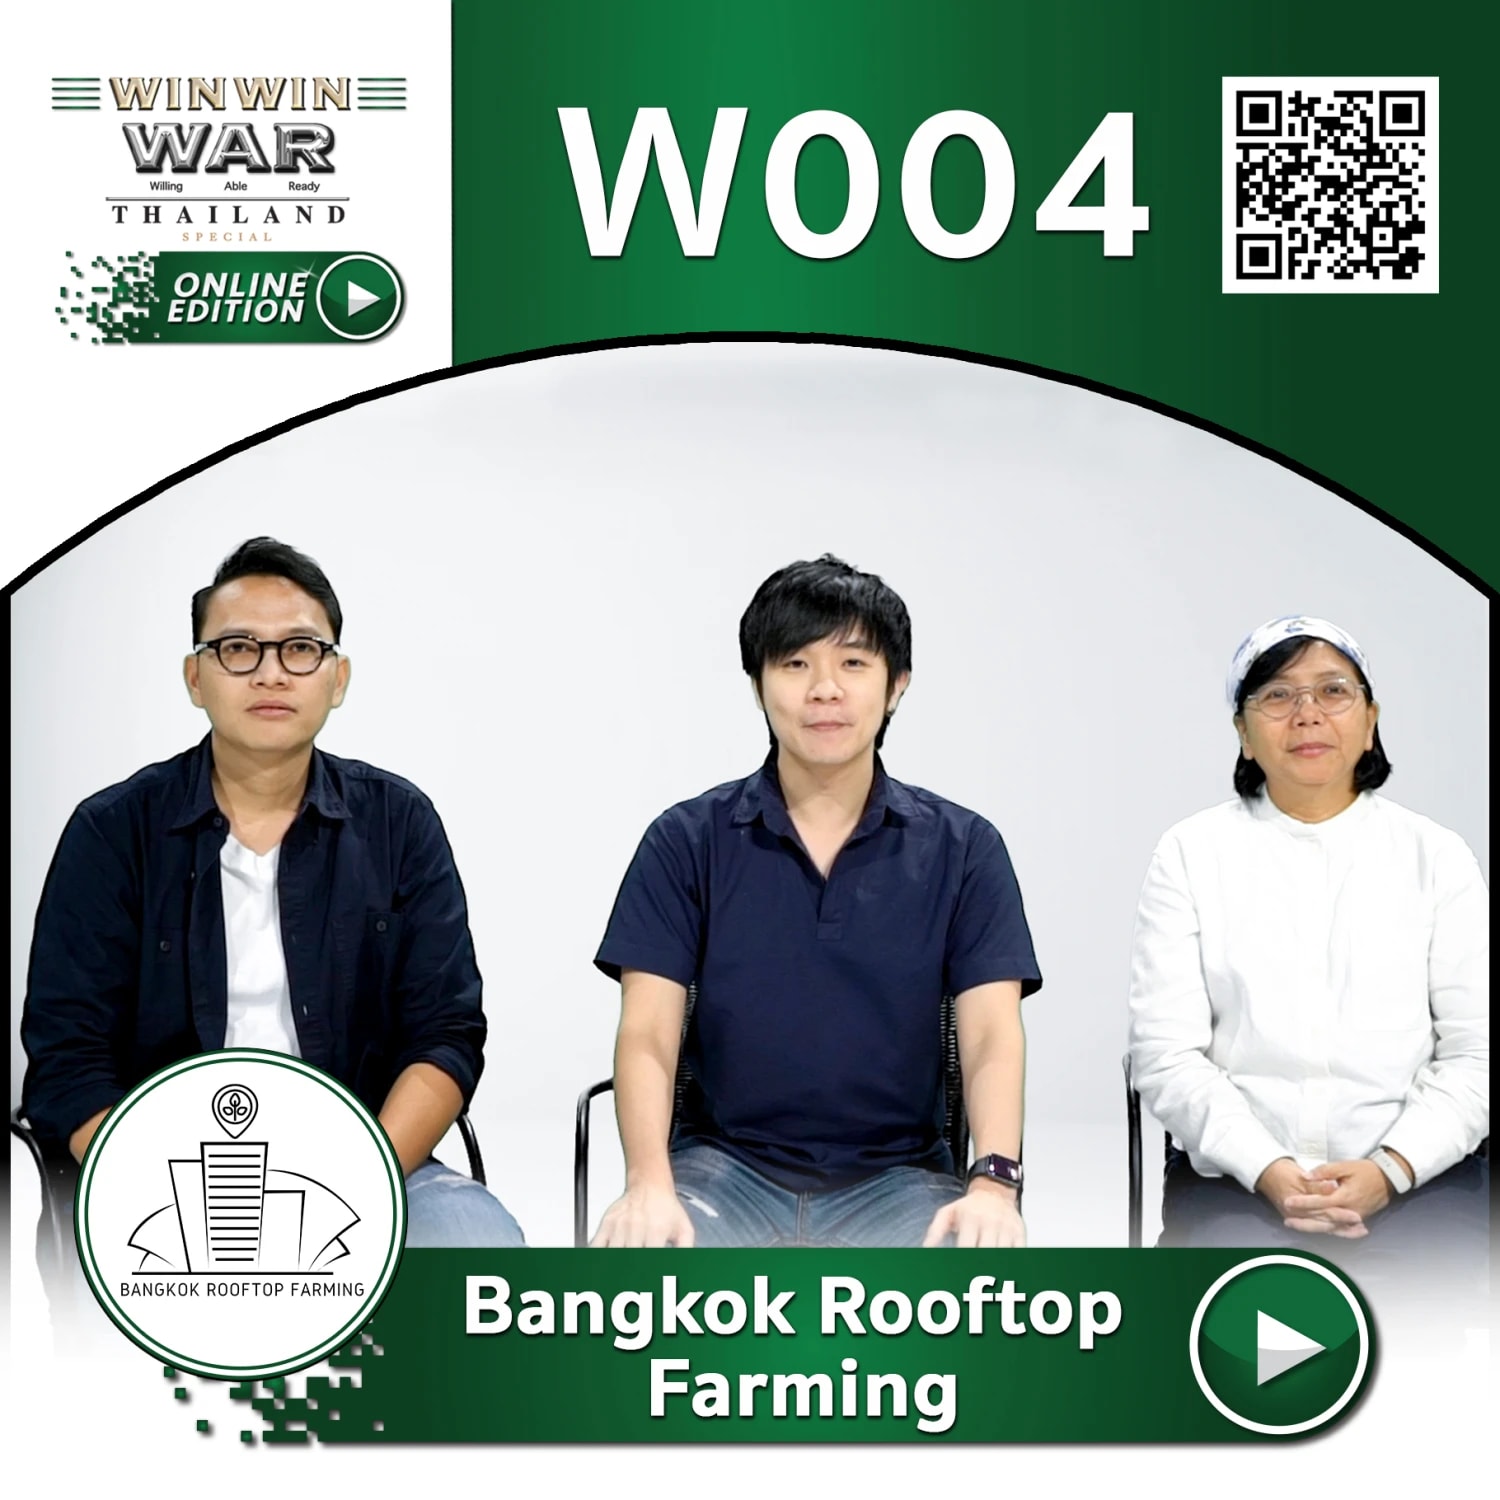 ร่วม vote ให้ทีม Bangkok Rooftop Farming กับแนวคิดธุรกิจในการทำฟาร์มบนดาดฟ้าของตึก